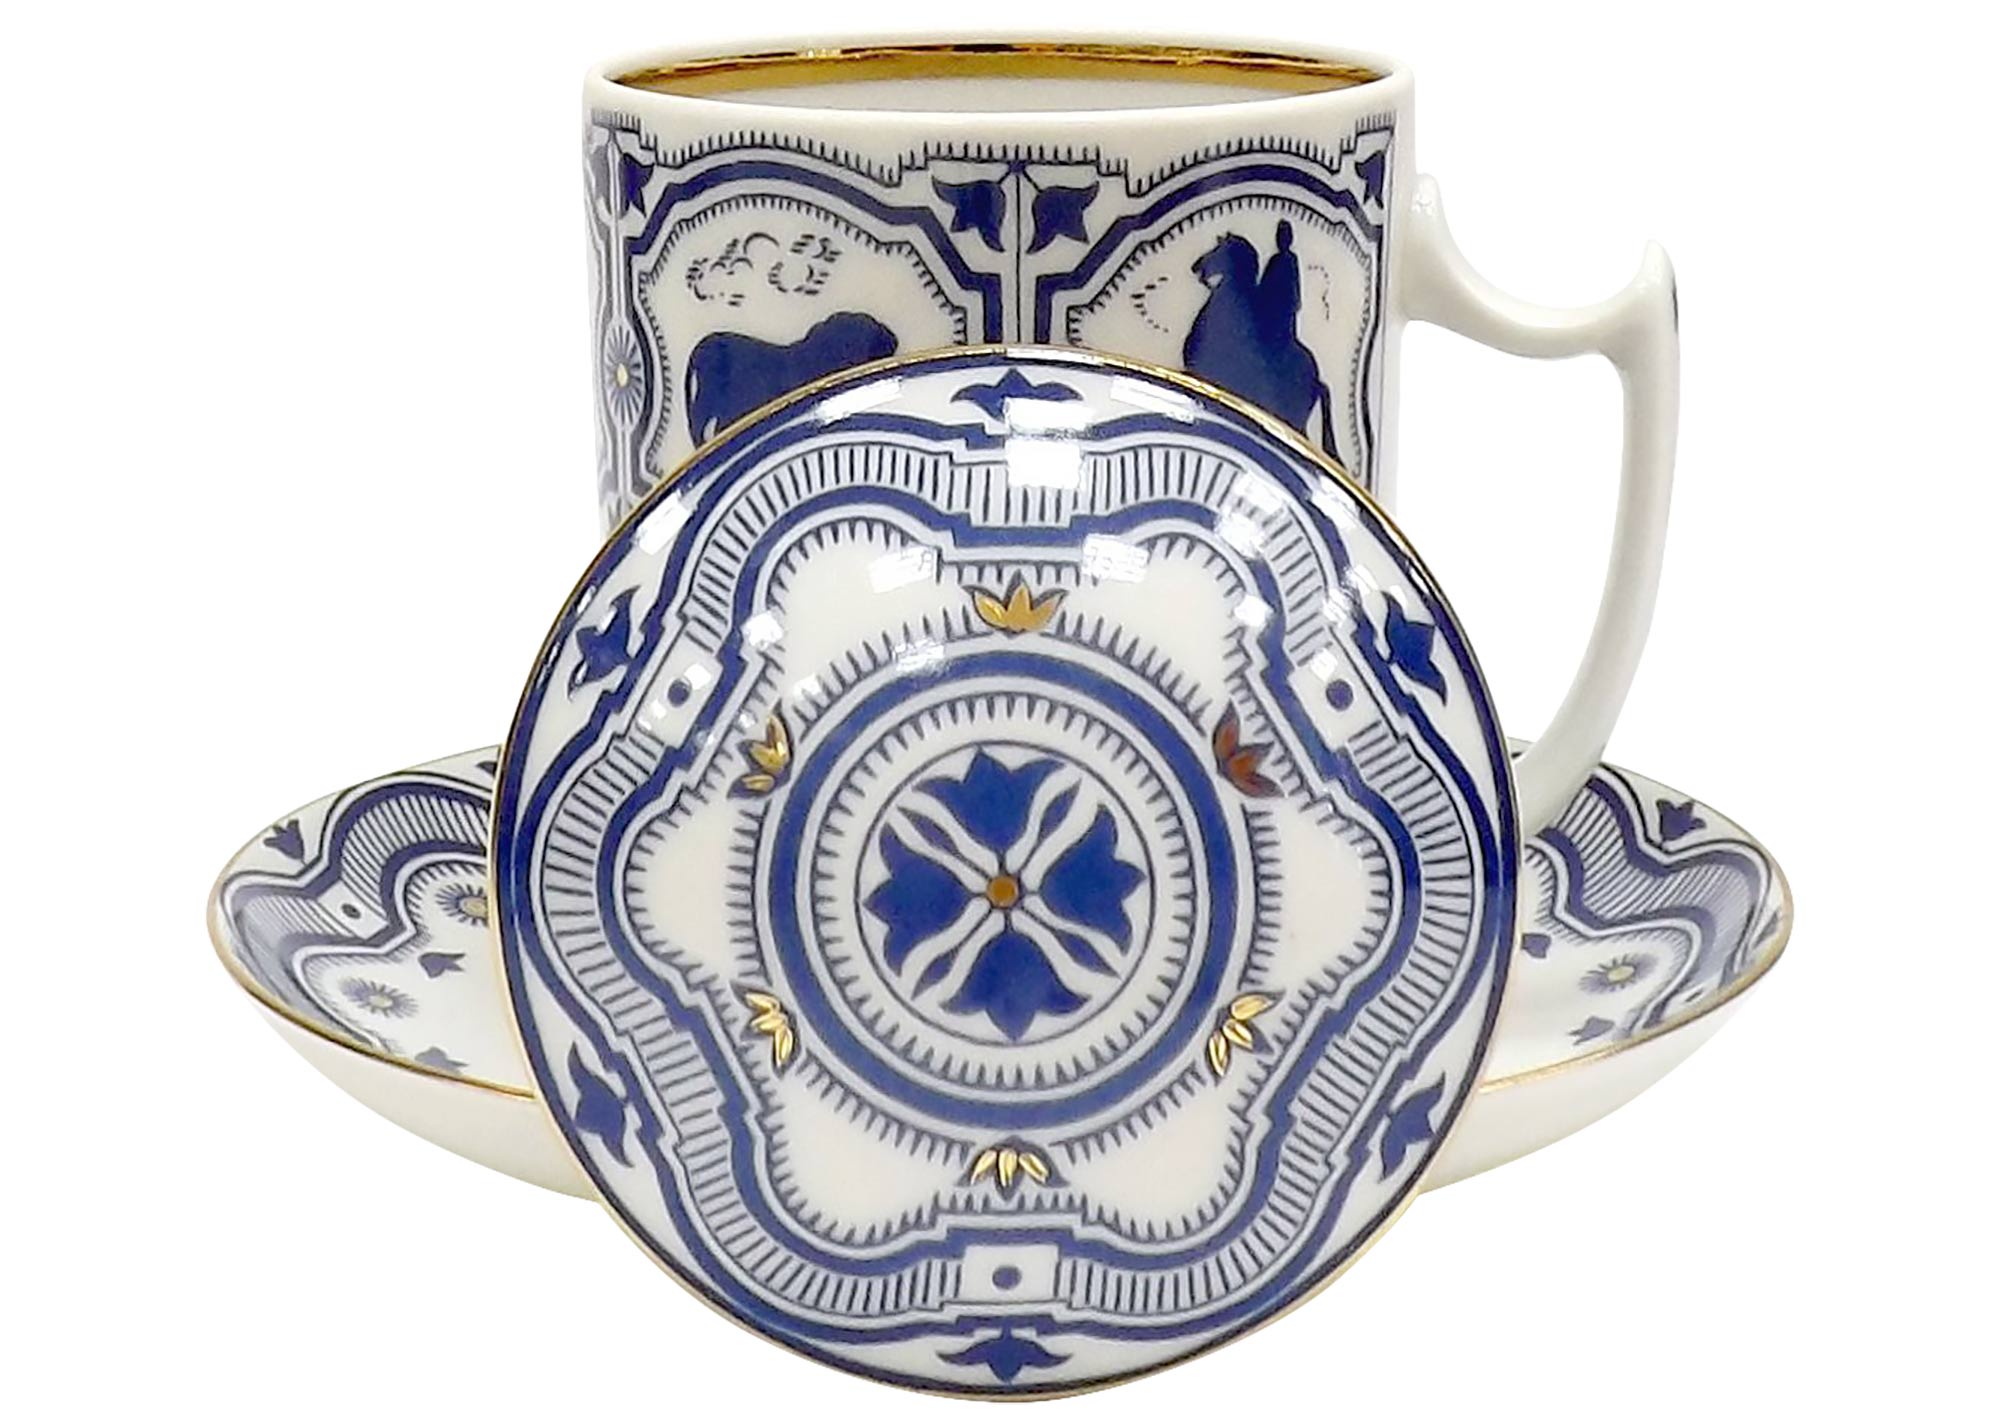 Buy Souvenir Covered Mug and Saucer  at GoldenCockerel.com